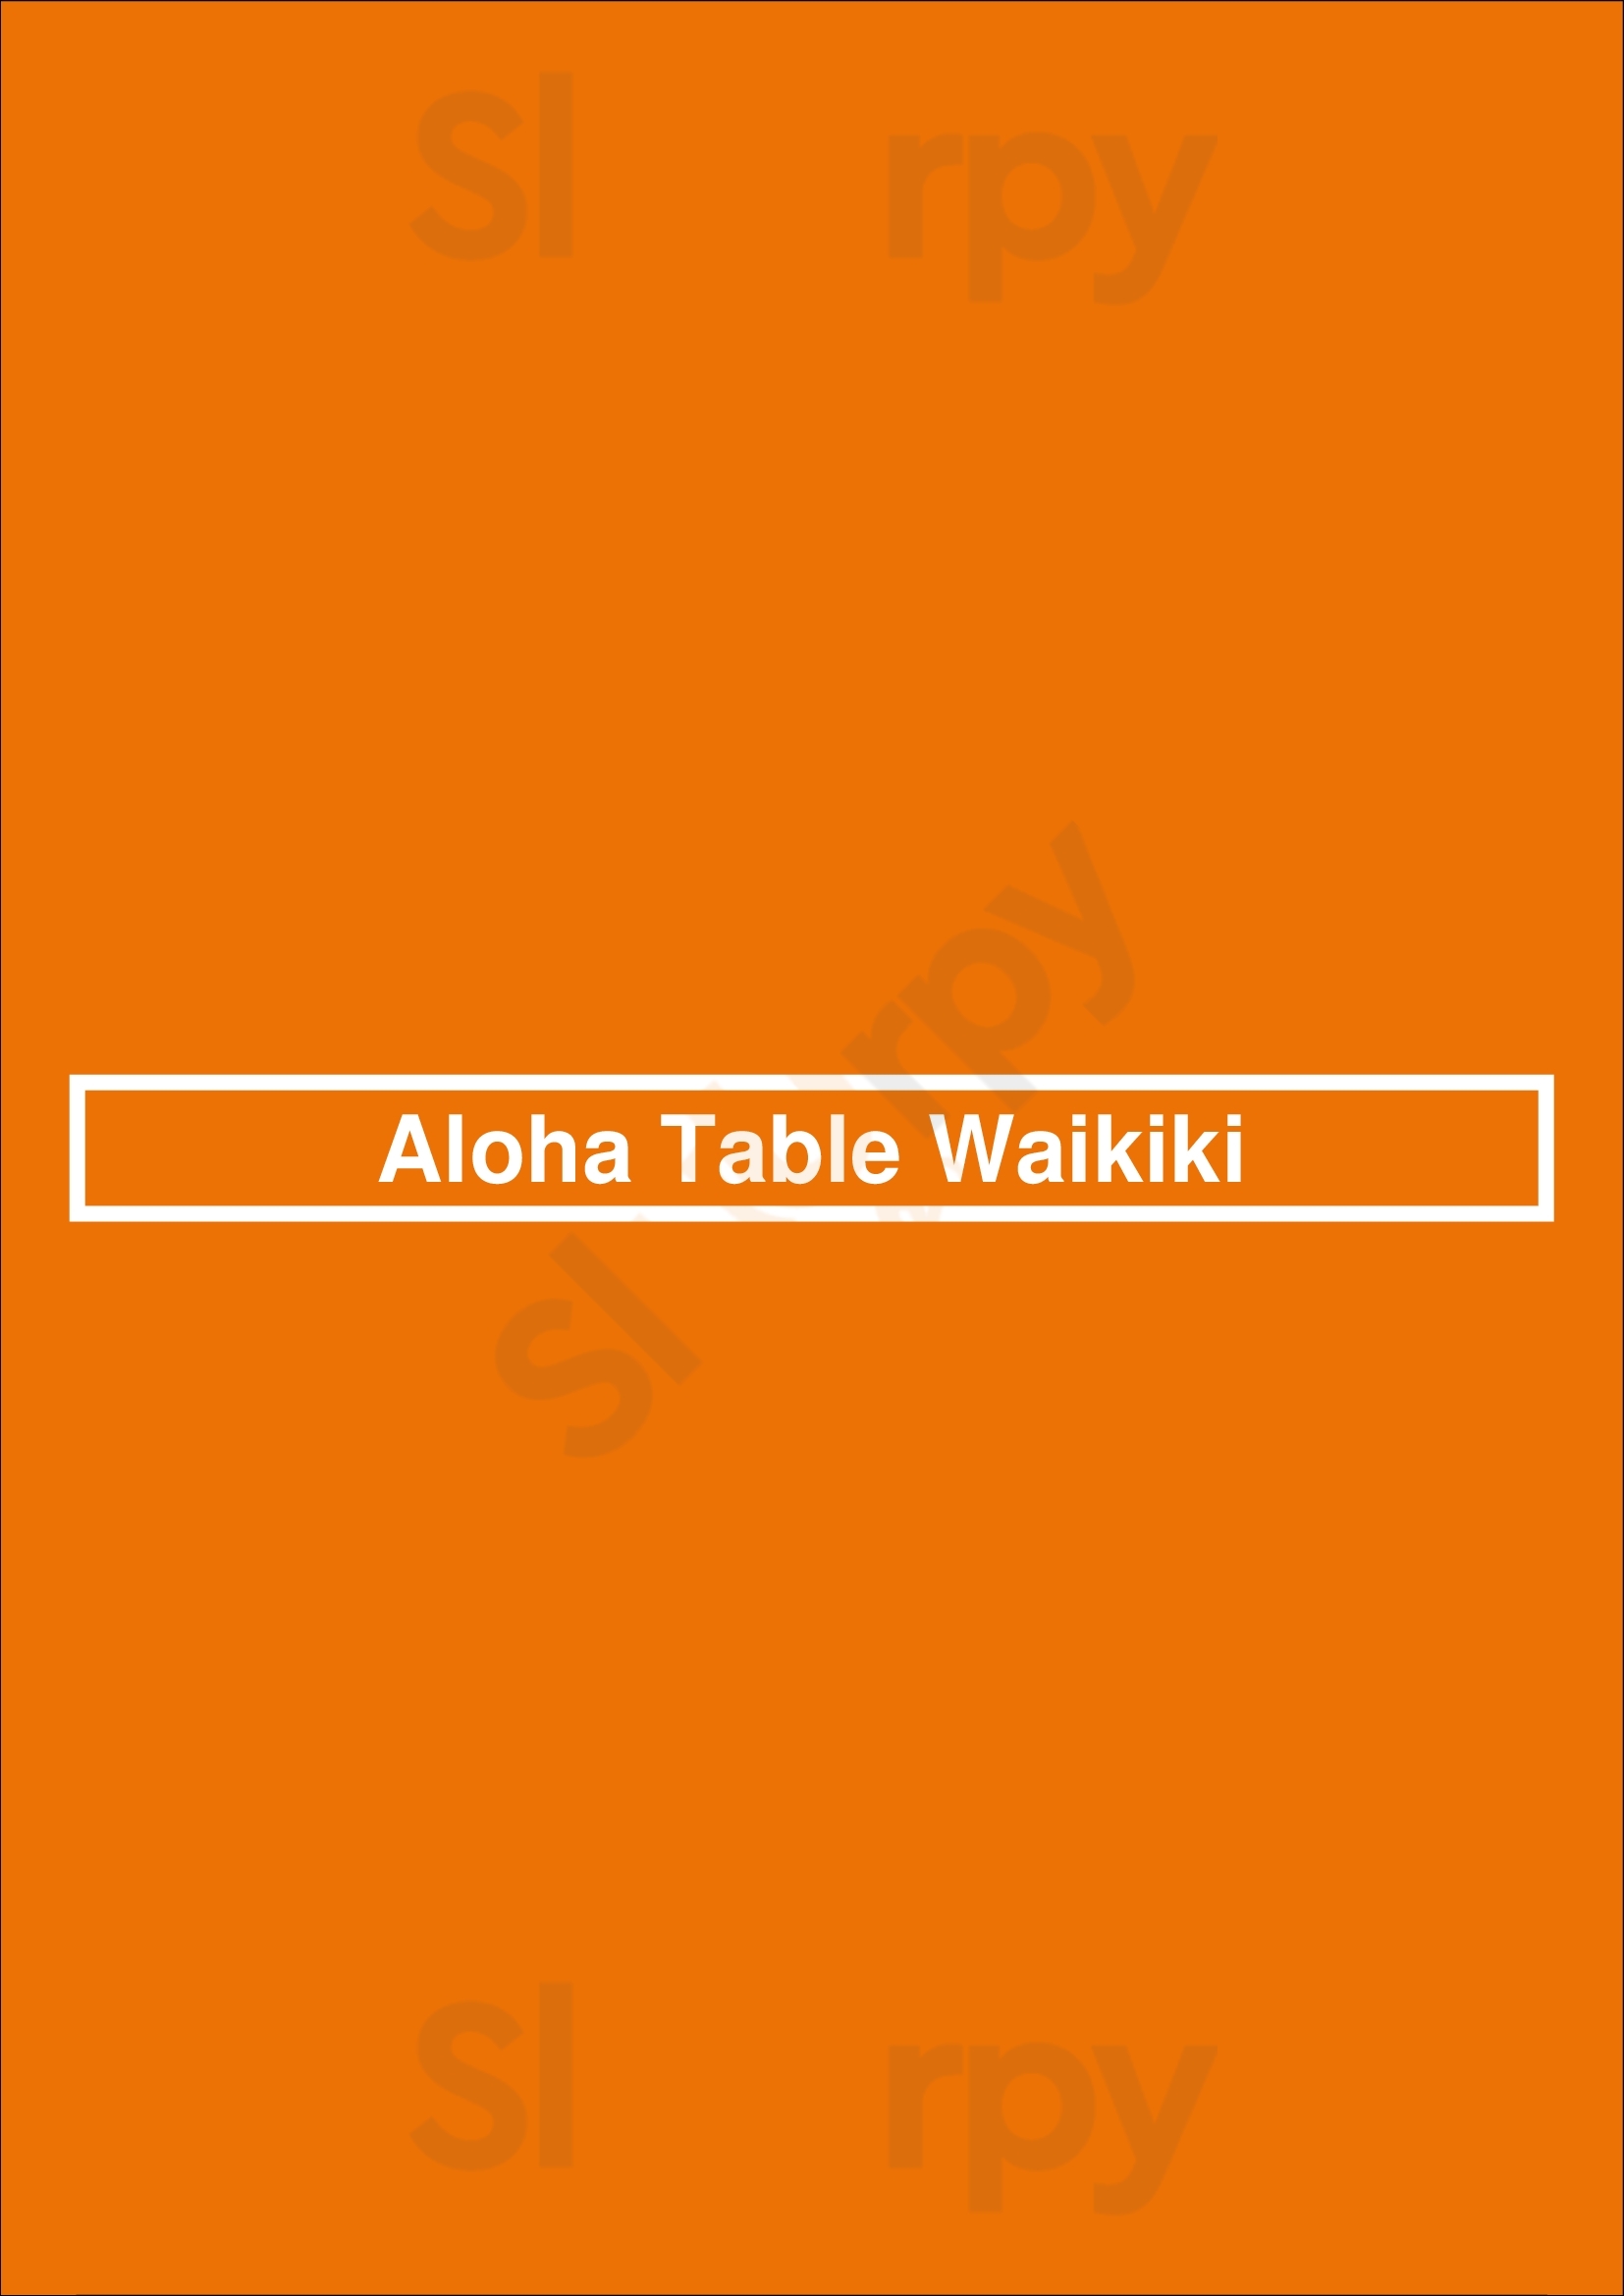 Aloha Table Waikiki Honolulu Menu - 1